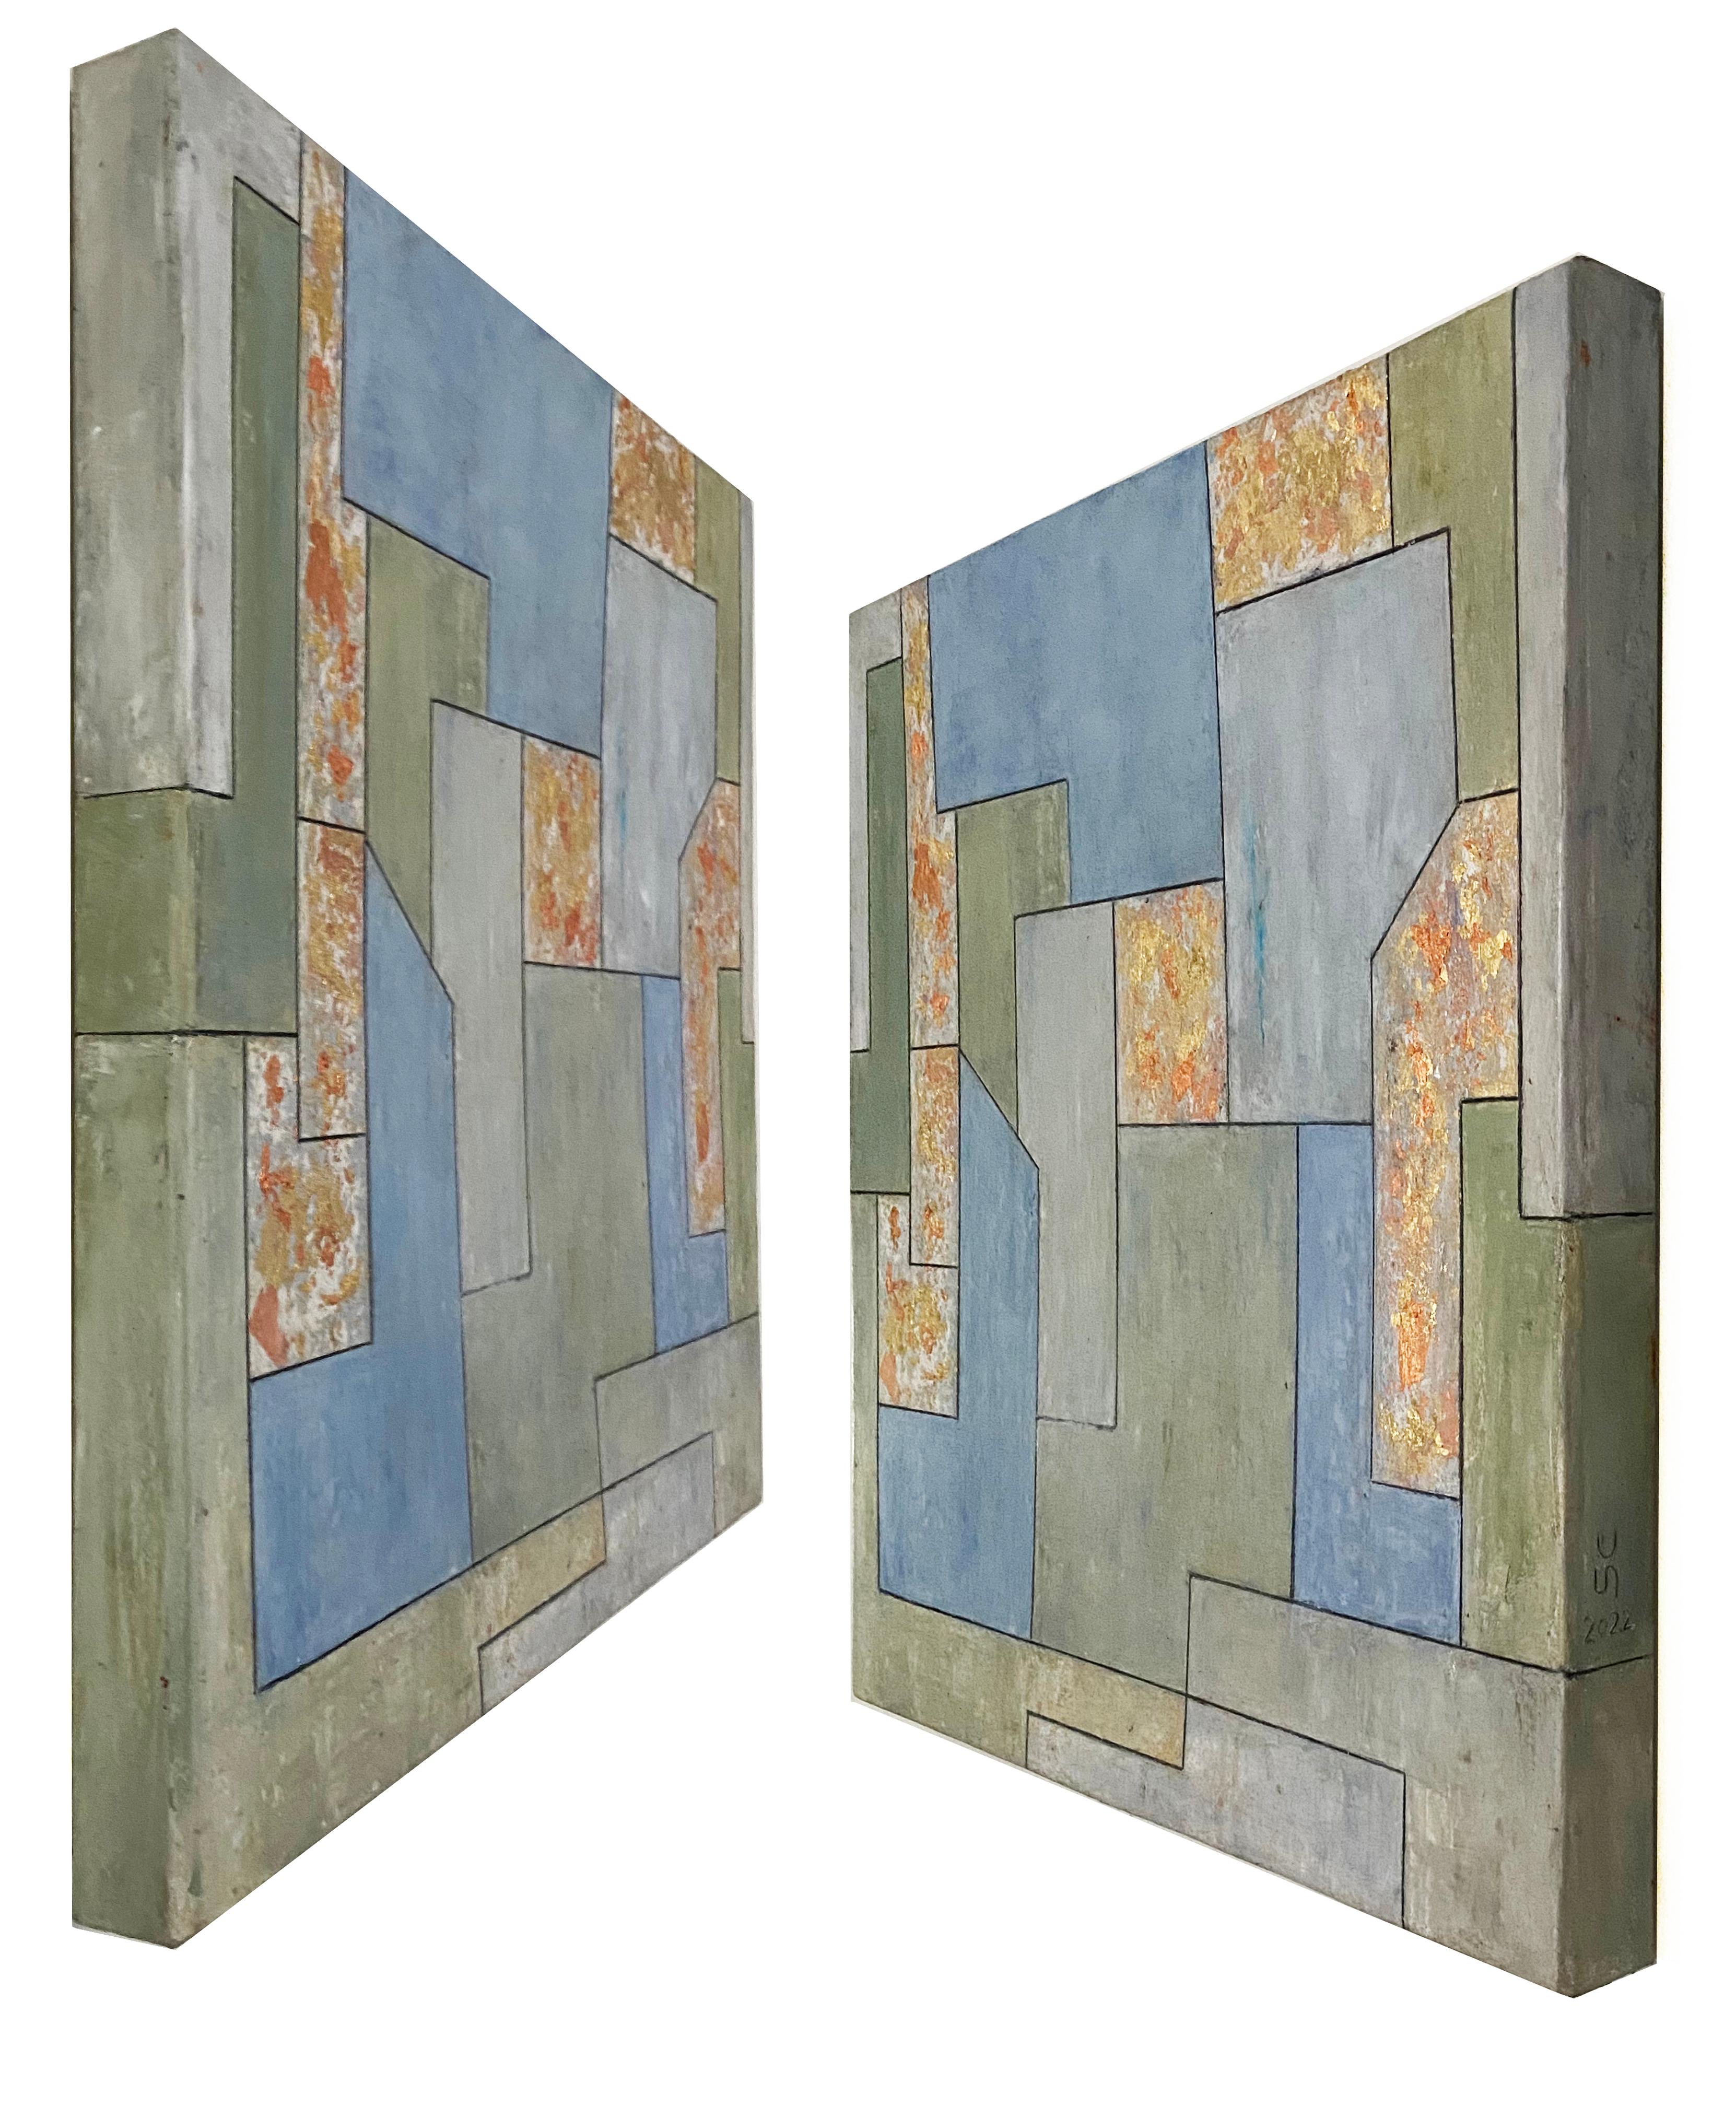 22x22x2 Zoll.  l, Blattgold  Geometrische Architektur, zeitgenssisch, Edelstein (Zeitgenössisch), Painting, von Stephen Cimini